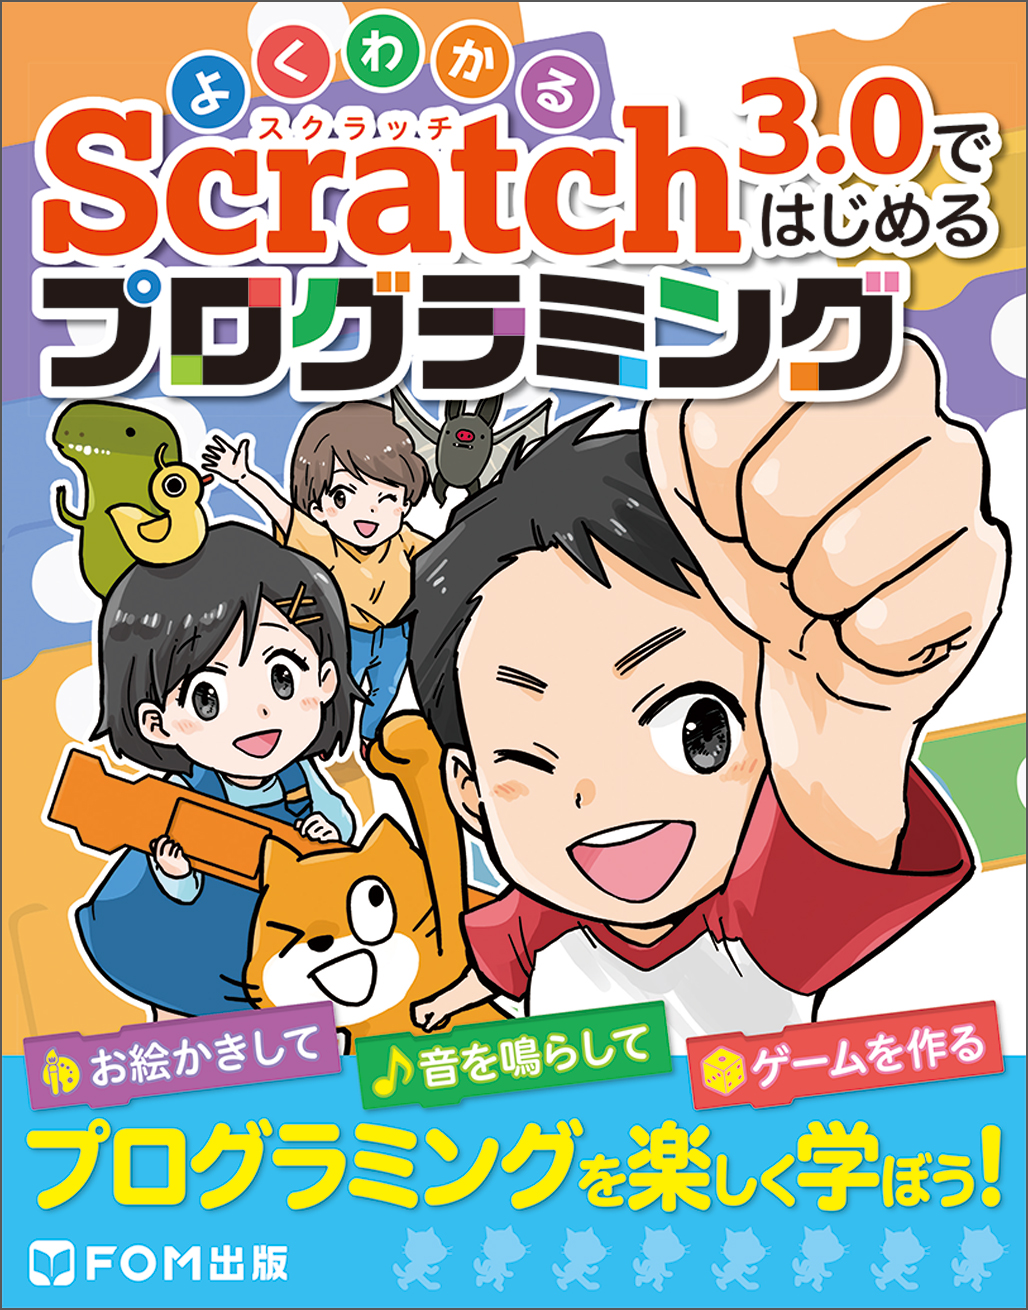 Scratch　3.0ではじめるプログラミングの商品画像